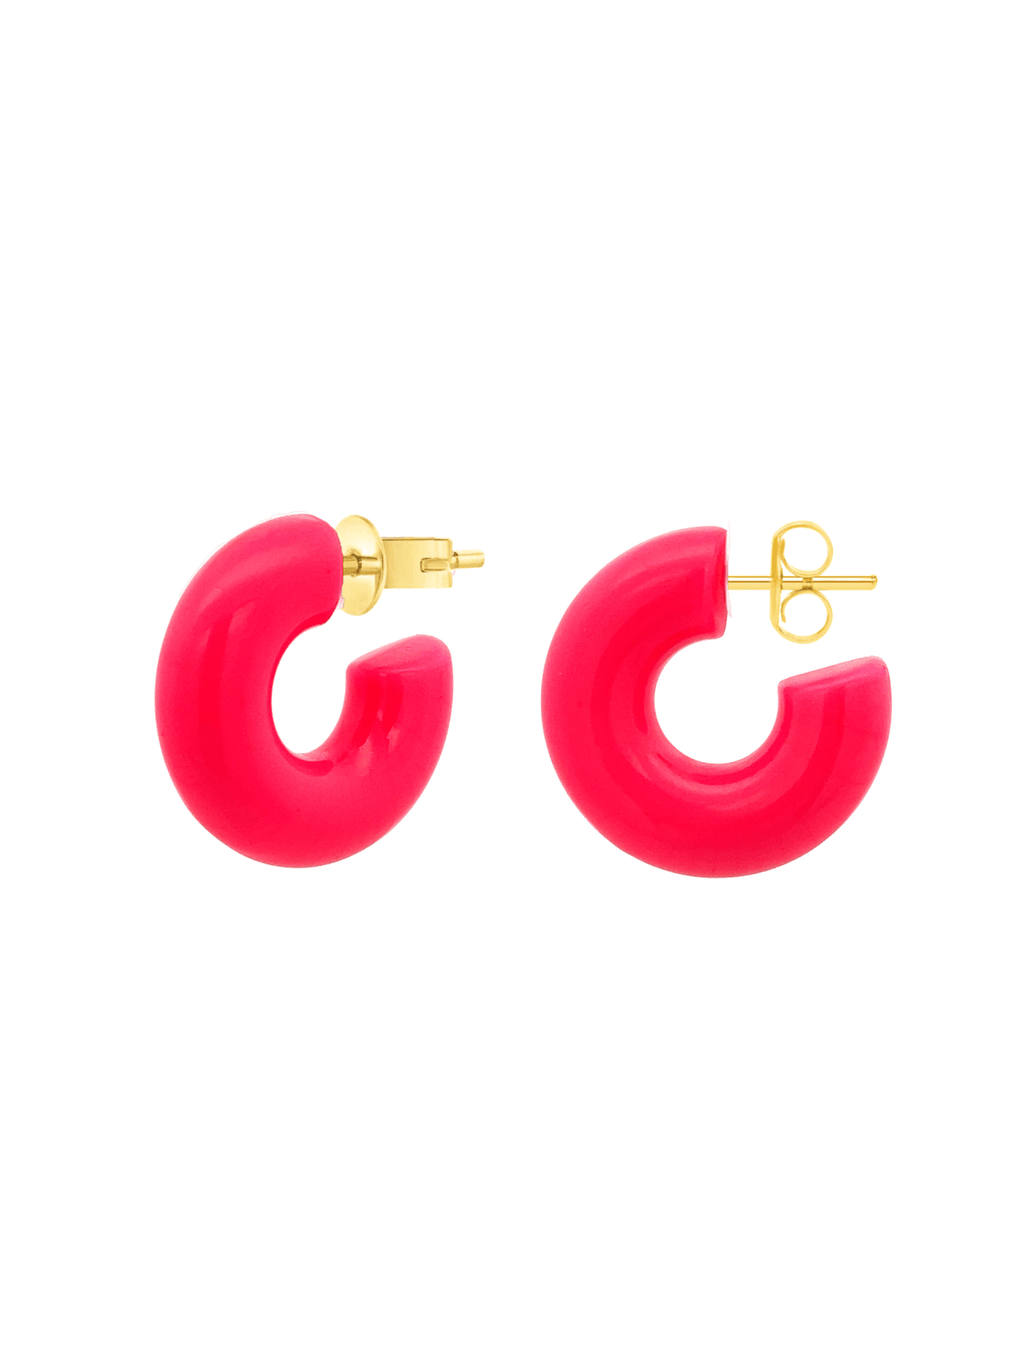 LeMel Tube Hoop Earrings - Multiple Colors!